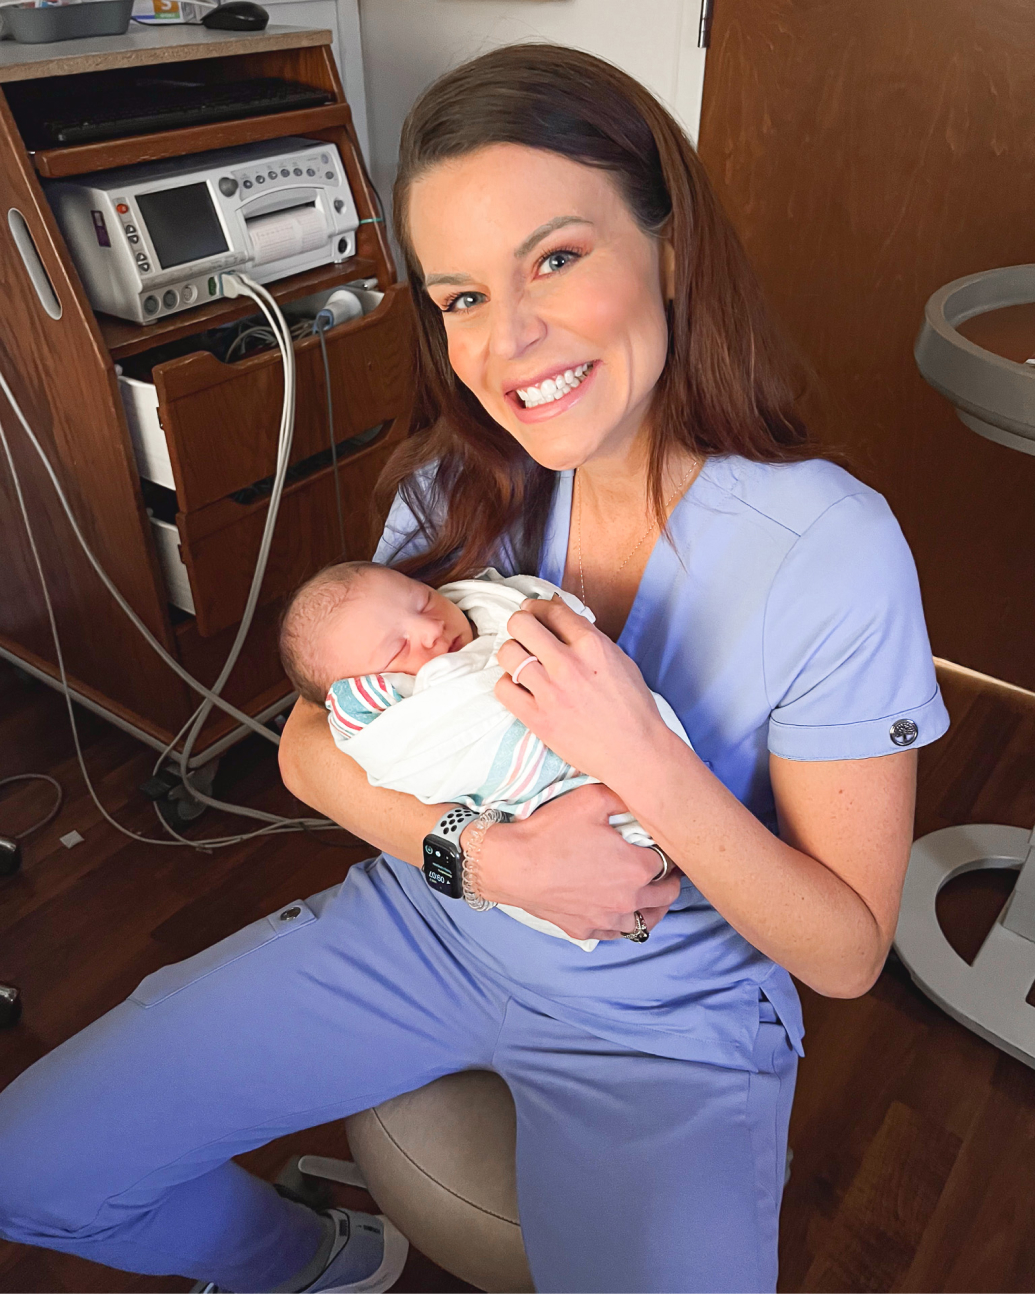 Casey Kolp holding an infant